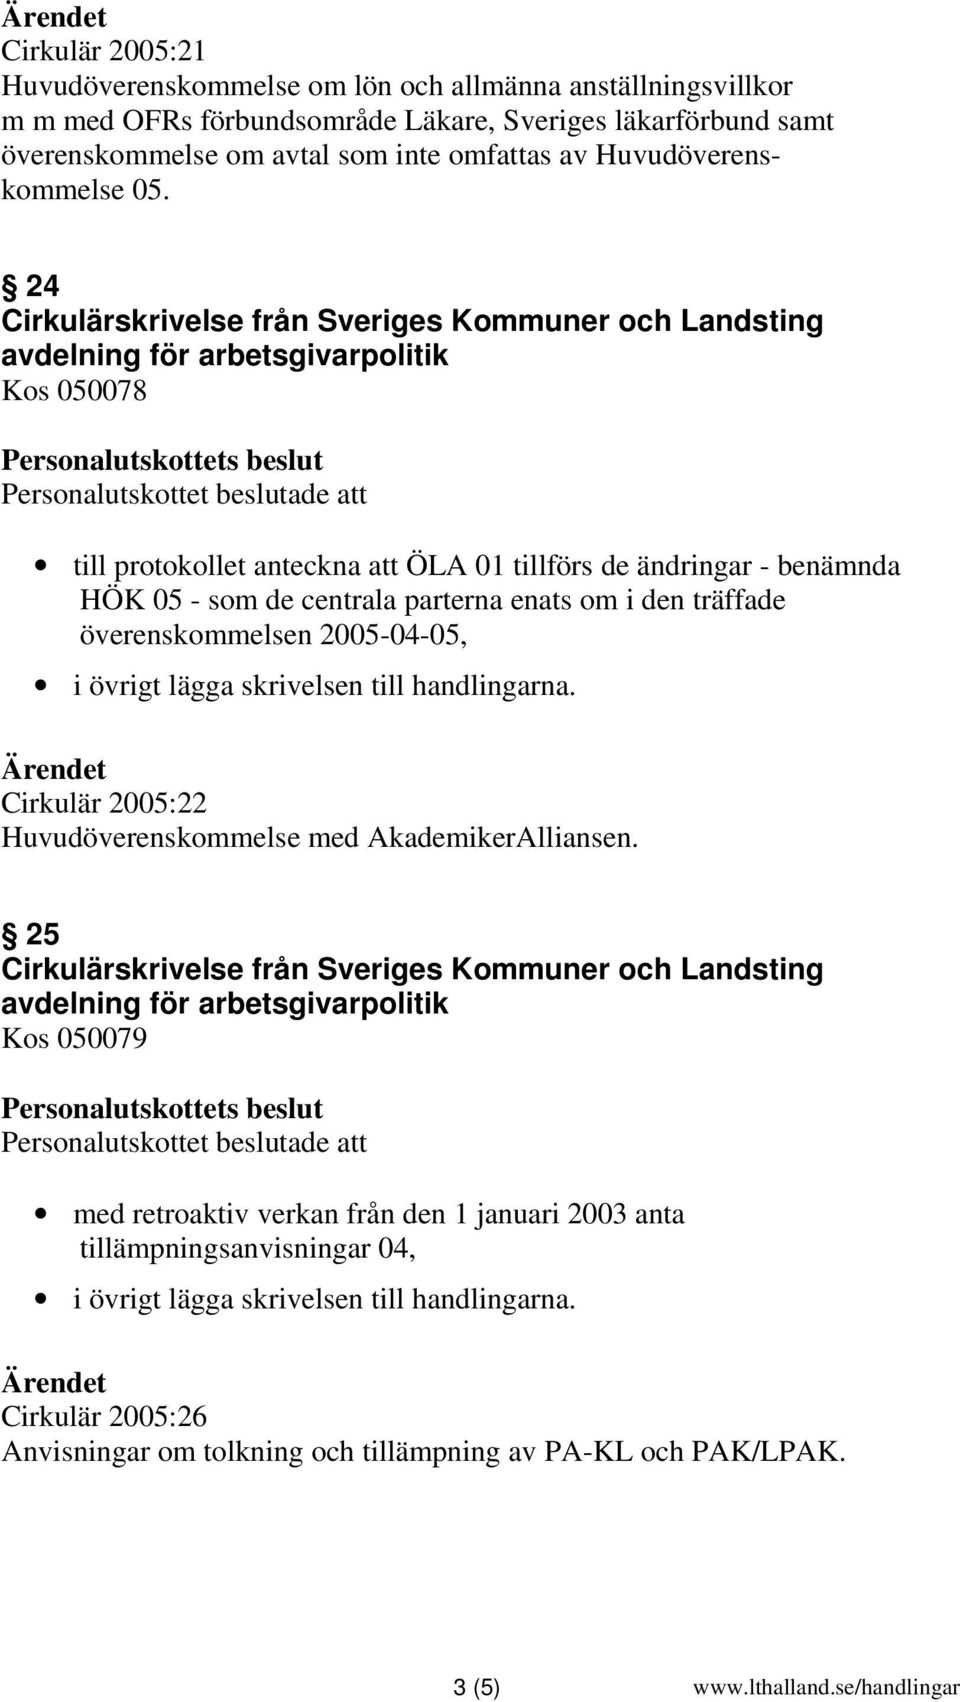 24 till protokollet anteckna att ÖLA 01 tillförs de ändringar - benämnda HÖK 05 - som de centrala parterna enats om i den träffade